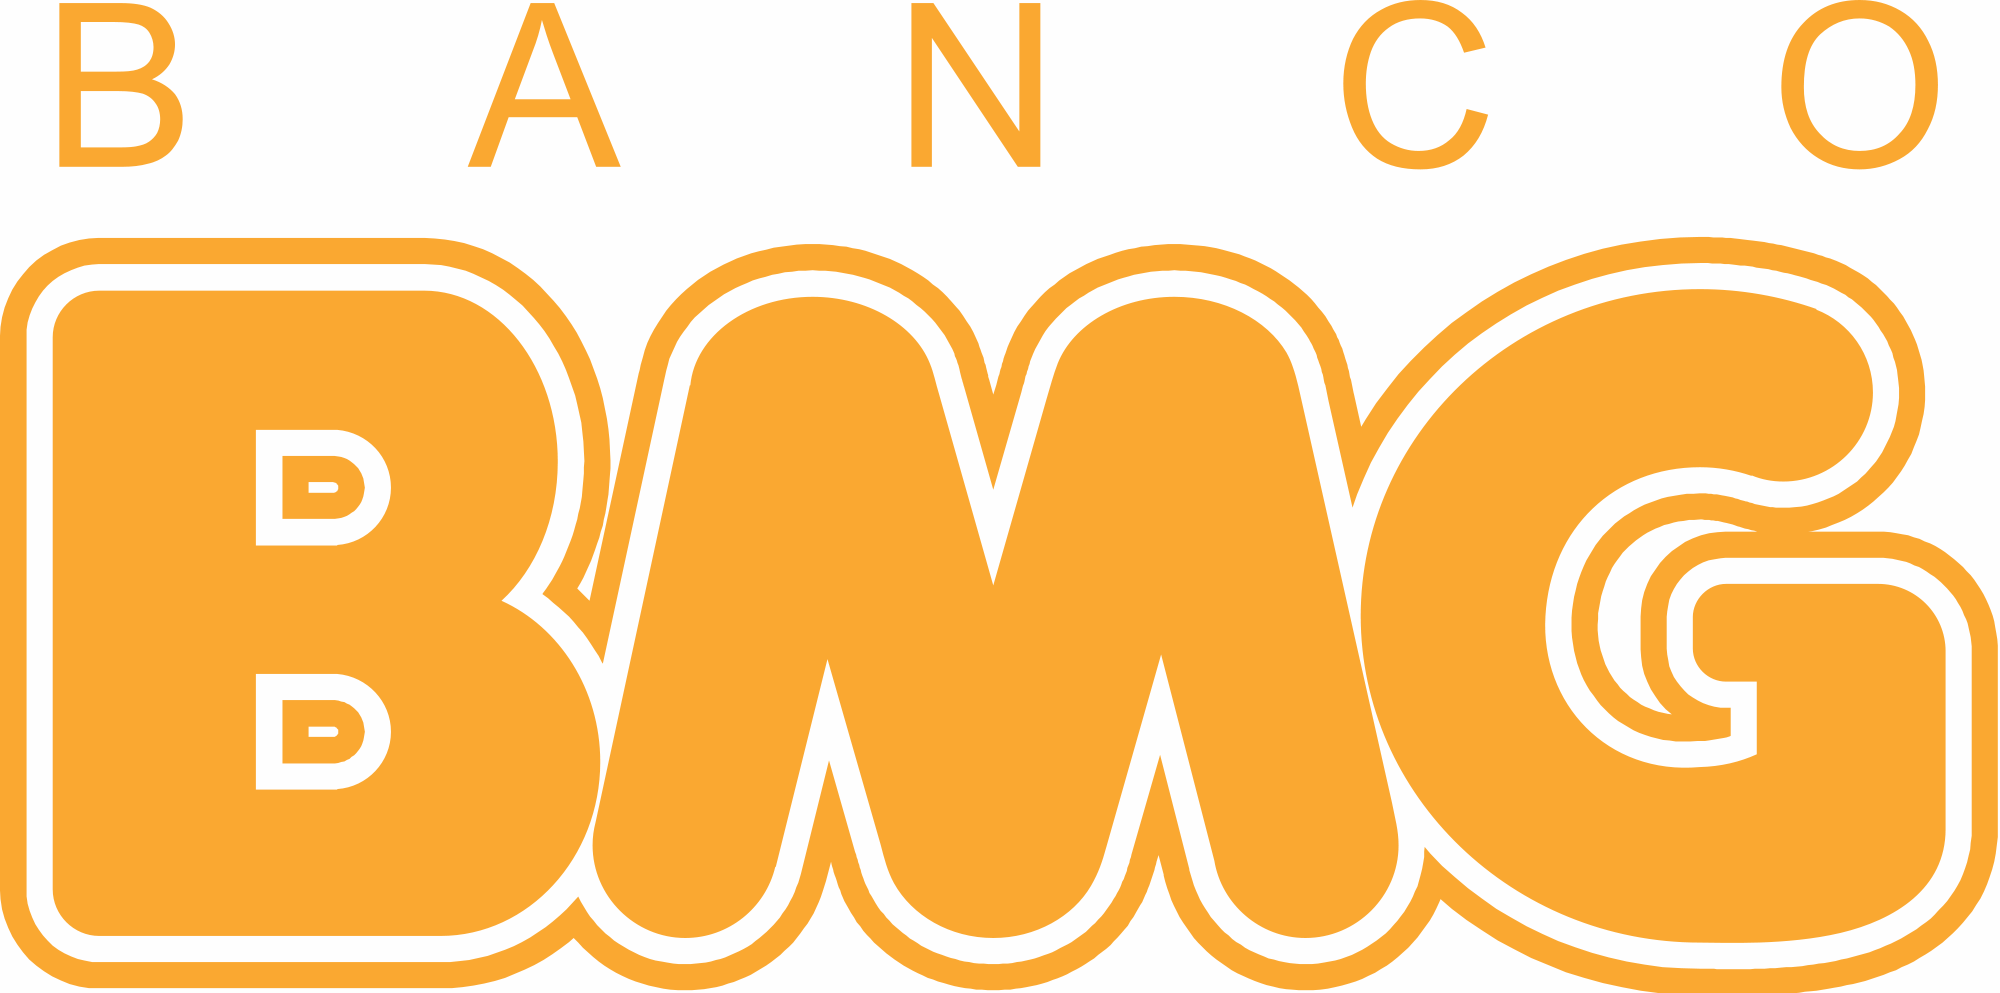 Banco BMG logo - Logodownload.org Download de Logotipos